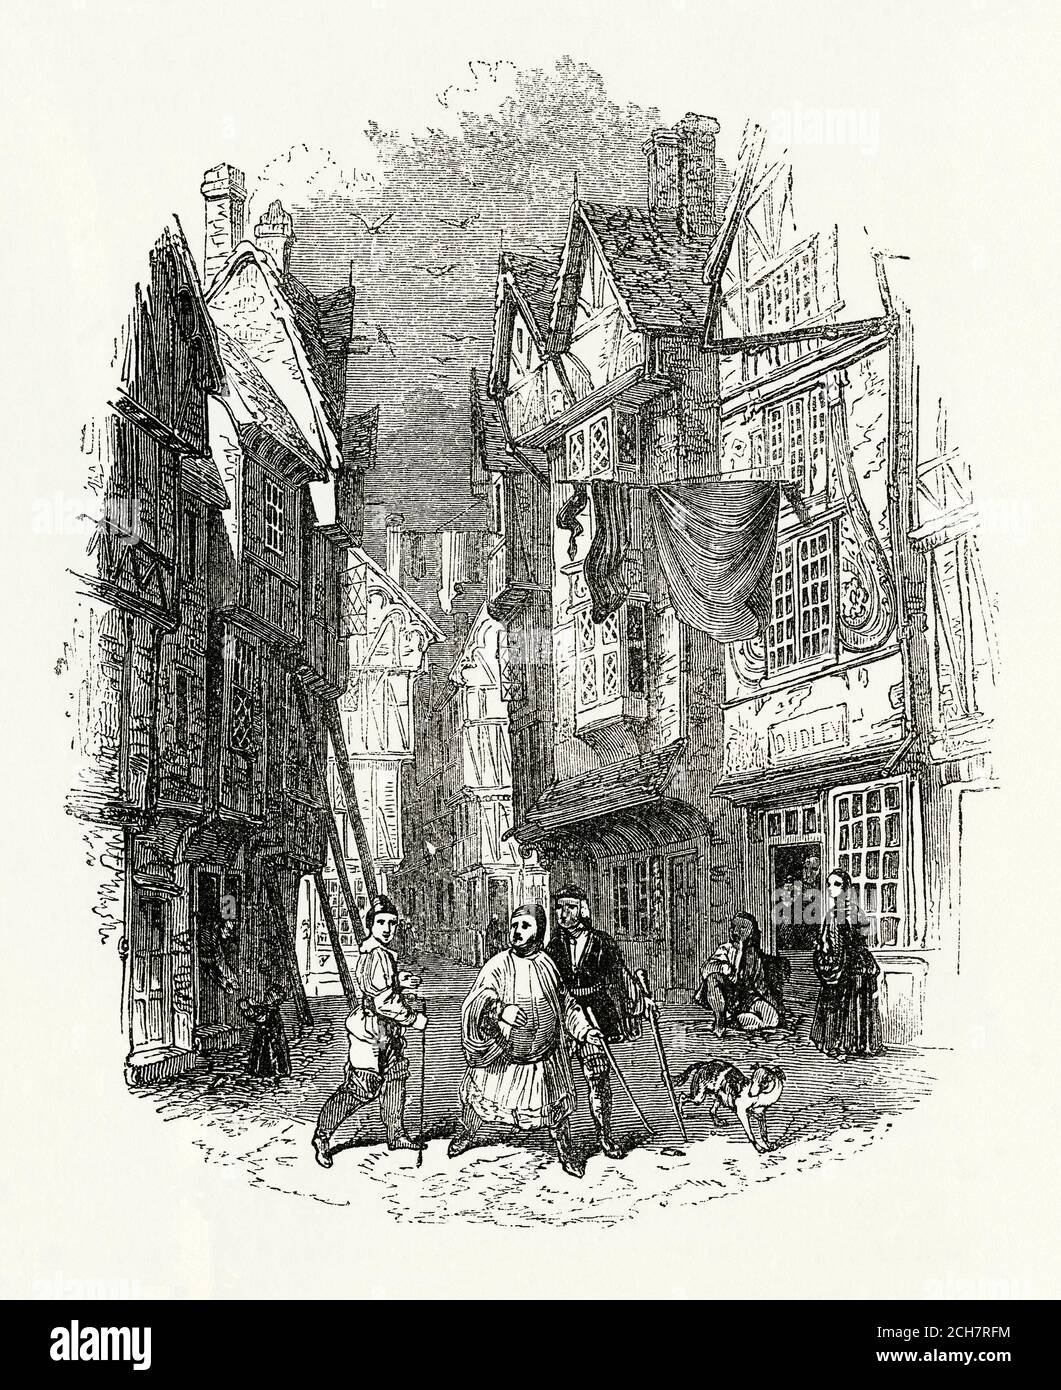 Ein alter Stich einer Straßenszene London, England, UK in den 1400er Jahren. Die Verhältnisse im Mittelalter waren miserabel und Slum-artig, die Straßen waren mit den Exkrementen von Menschen und Tieren bedeckt, sowie mit allerlei Müll – trotz eines Gesetzes, das bedeutete, dass jeder, der Müll auf der Straße abkippte, einer hohen Geldstrafe ausgesetzt war. Schlecht gebaute Häuser ohne Fundamente bedeuteten, dass ein Gebäudeeinsturz eine echte Möglichkeit war und oft war Arbeit erforderlich, um die Fachwerkhäuser zu stützen – siehe Mitte der hölzernen Stützen links. Stockfoto